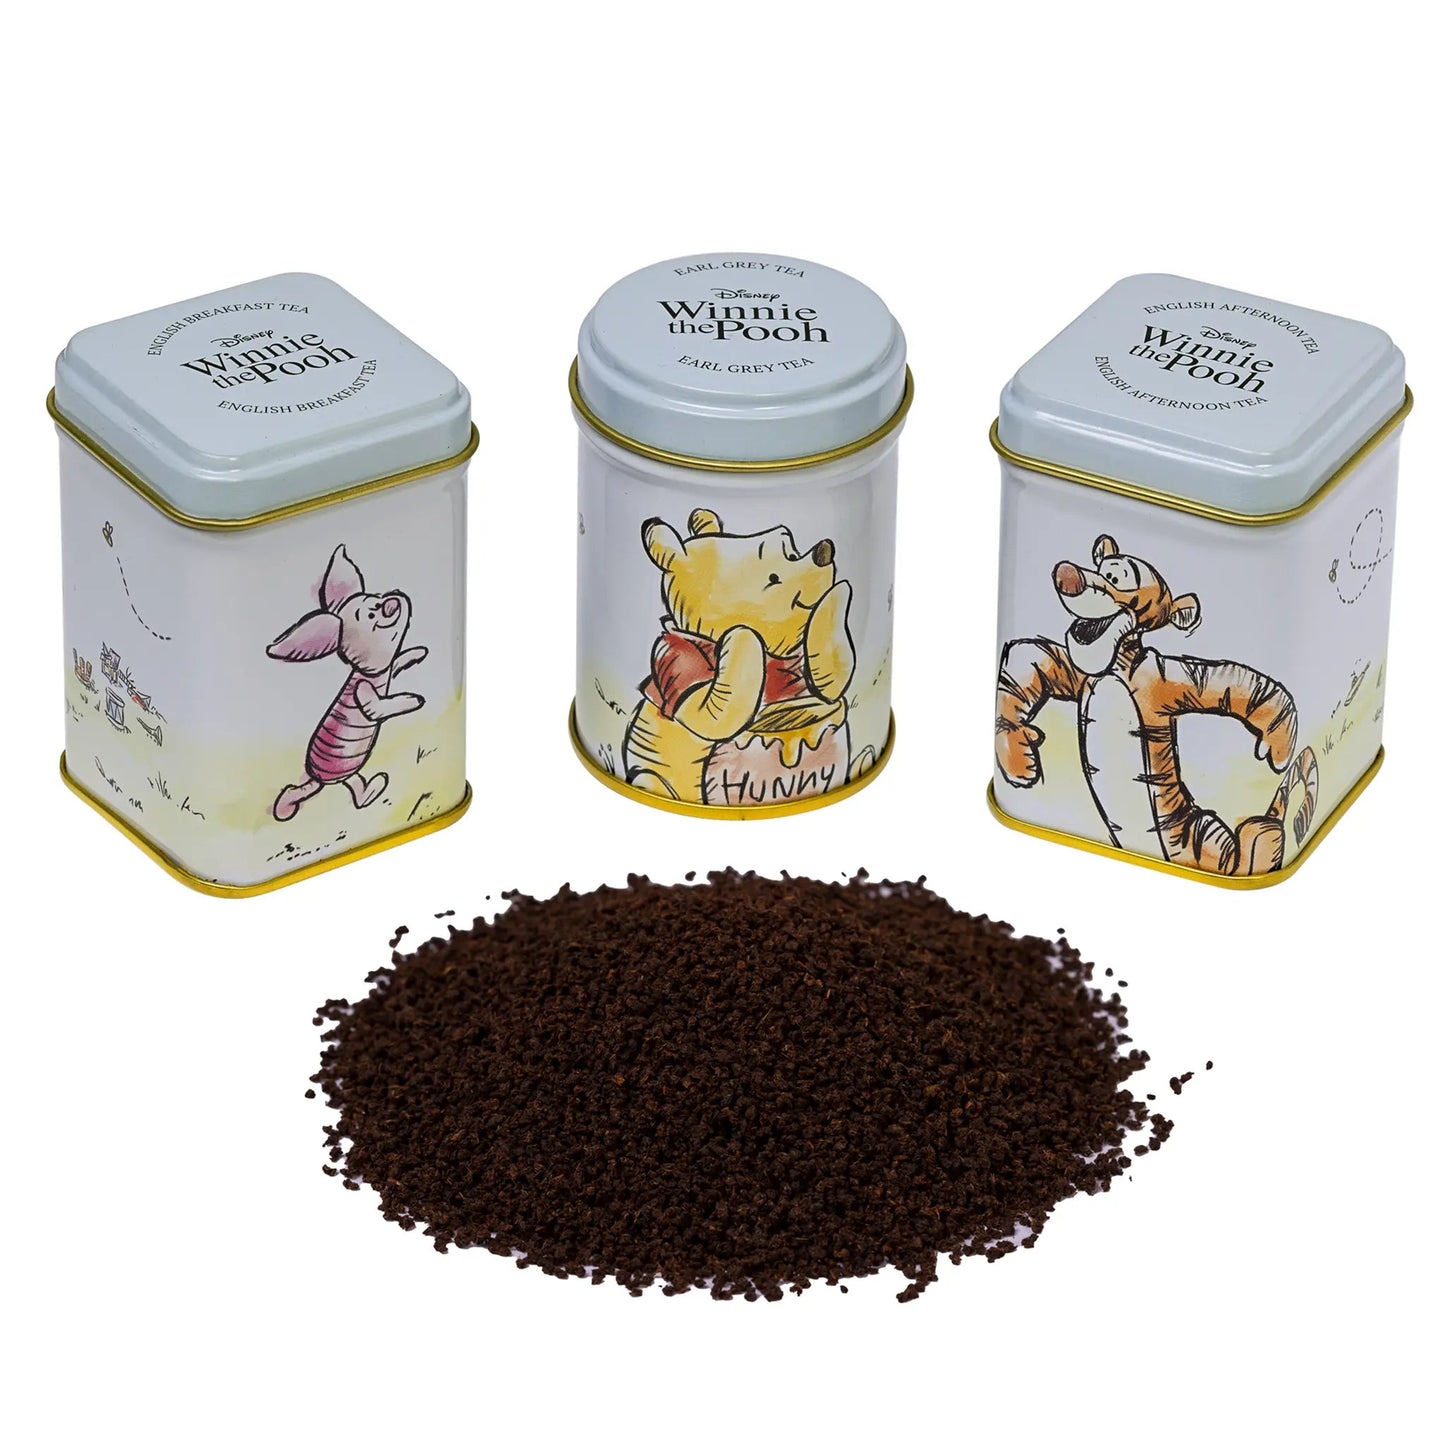 Winnie The Pooh Mini Tin Gift Set Tea Tins New English Teas 